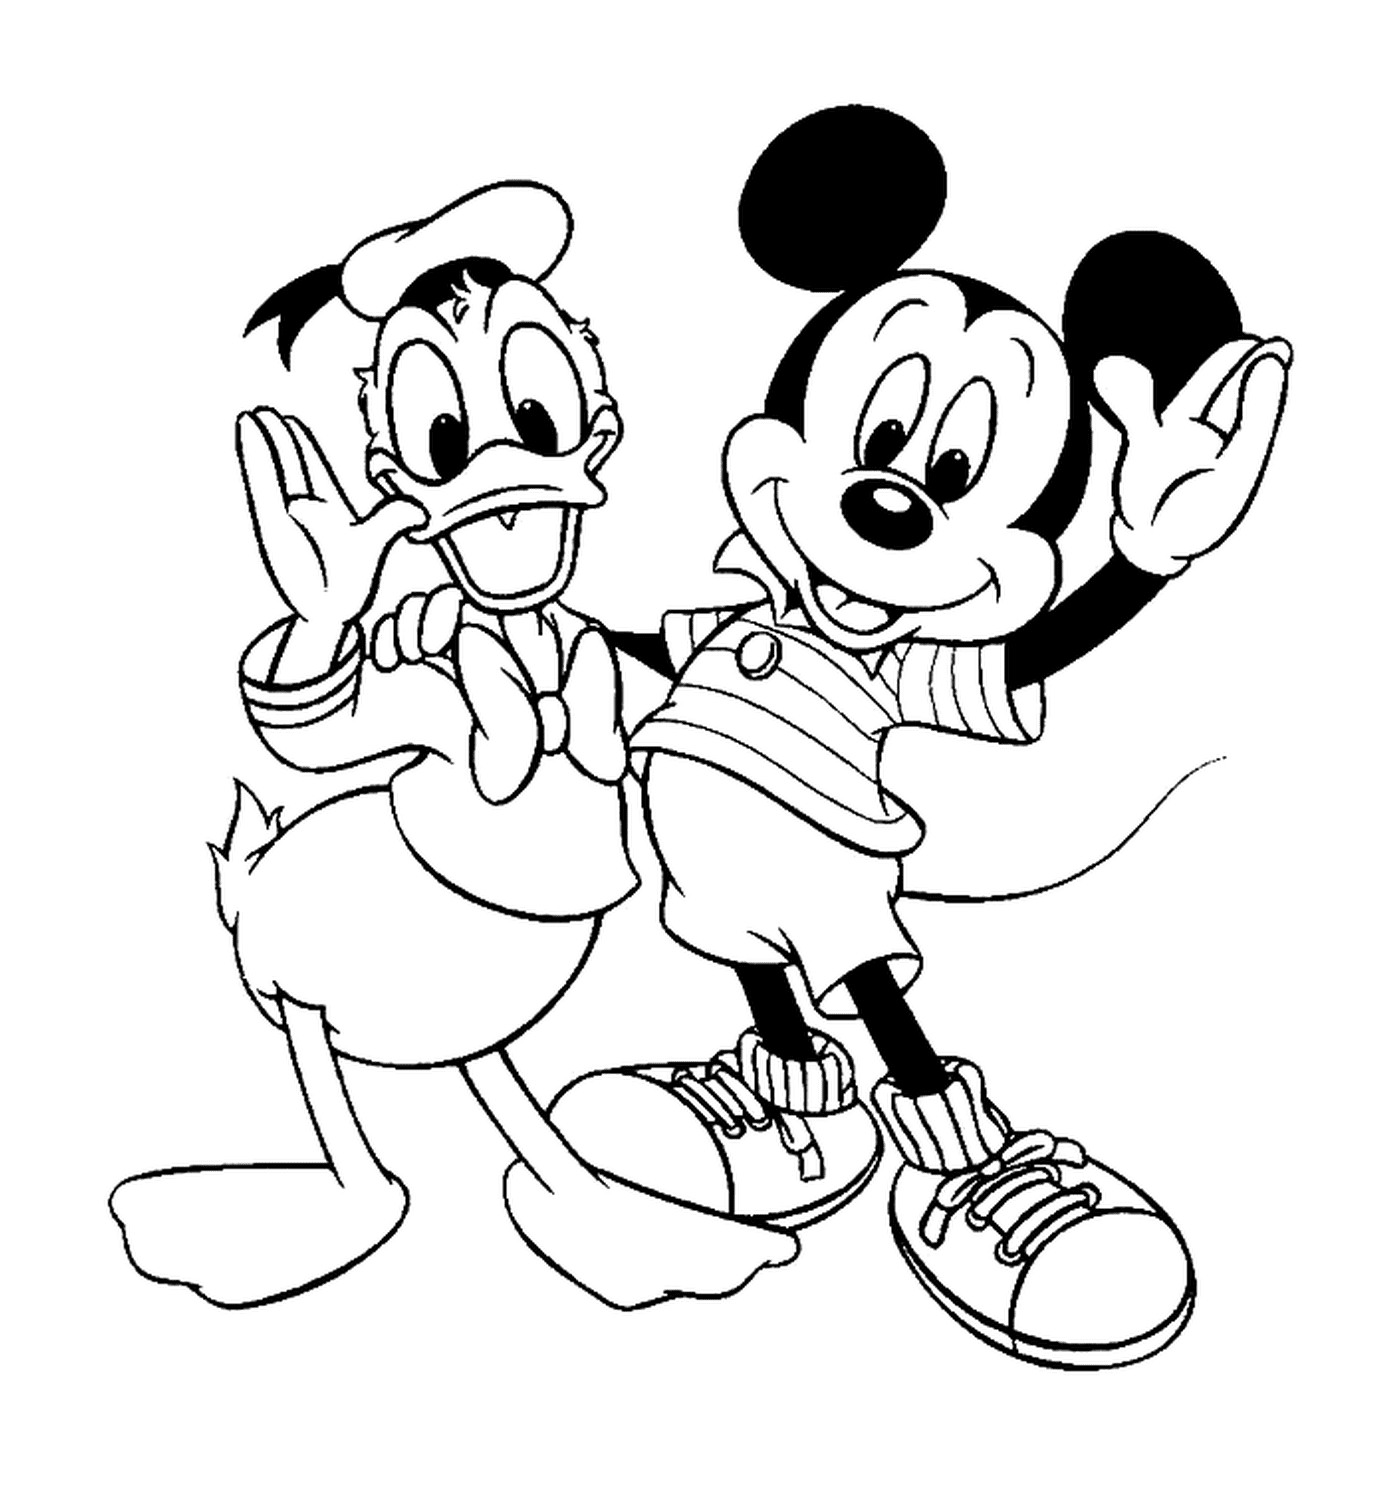  Рисунок Микки и его друга Дональда: Микки Маус и Дональд Дак 